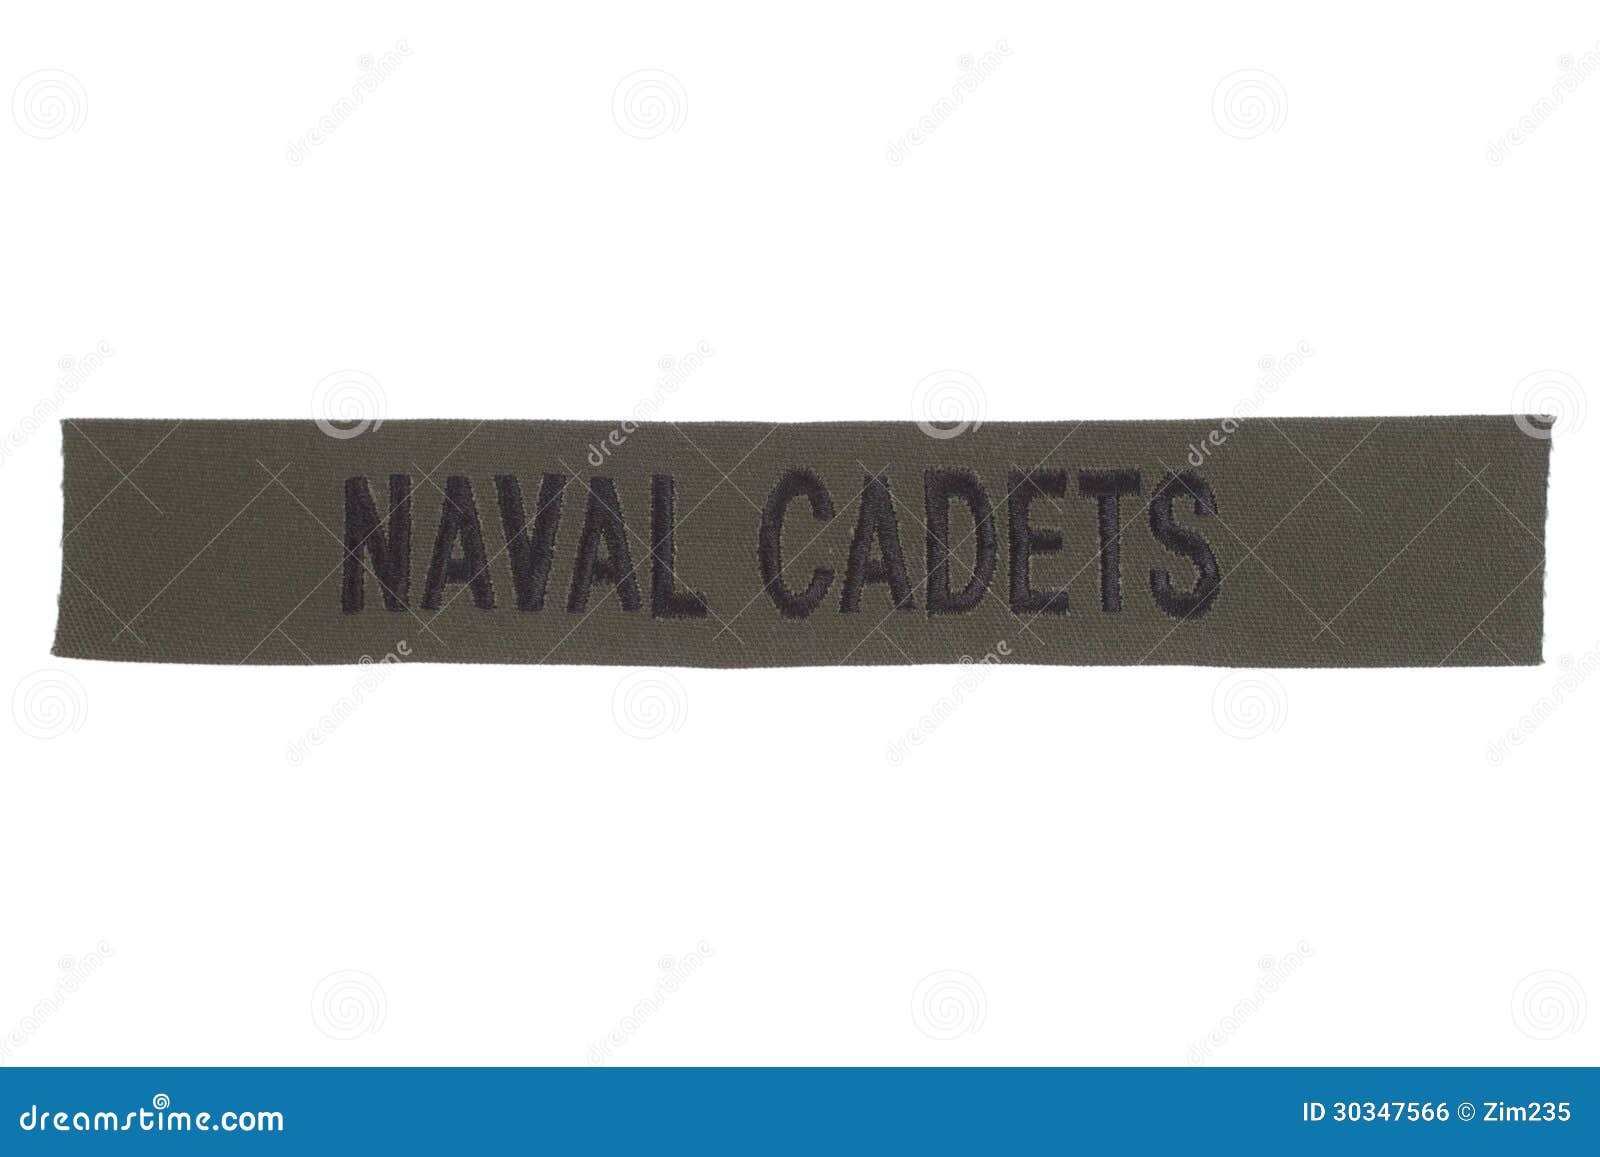 us naval cadets uniform badge